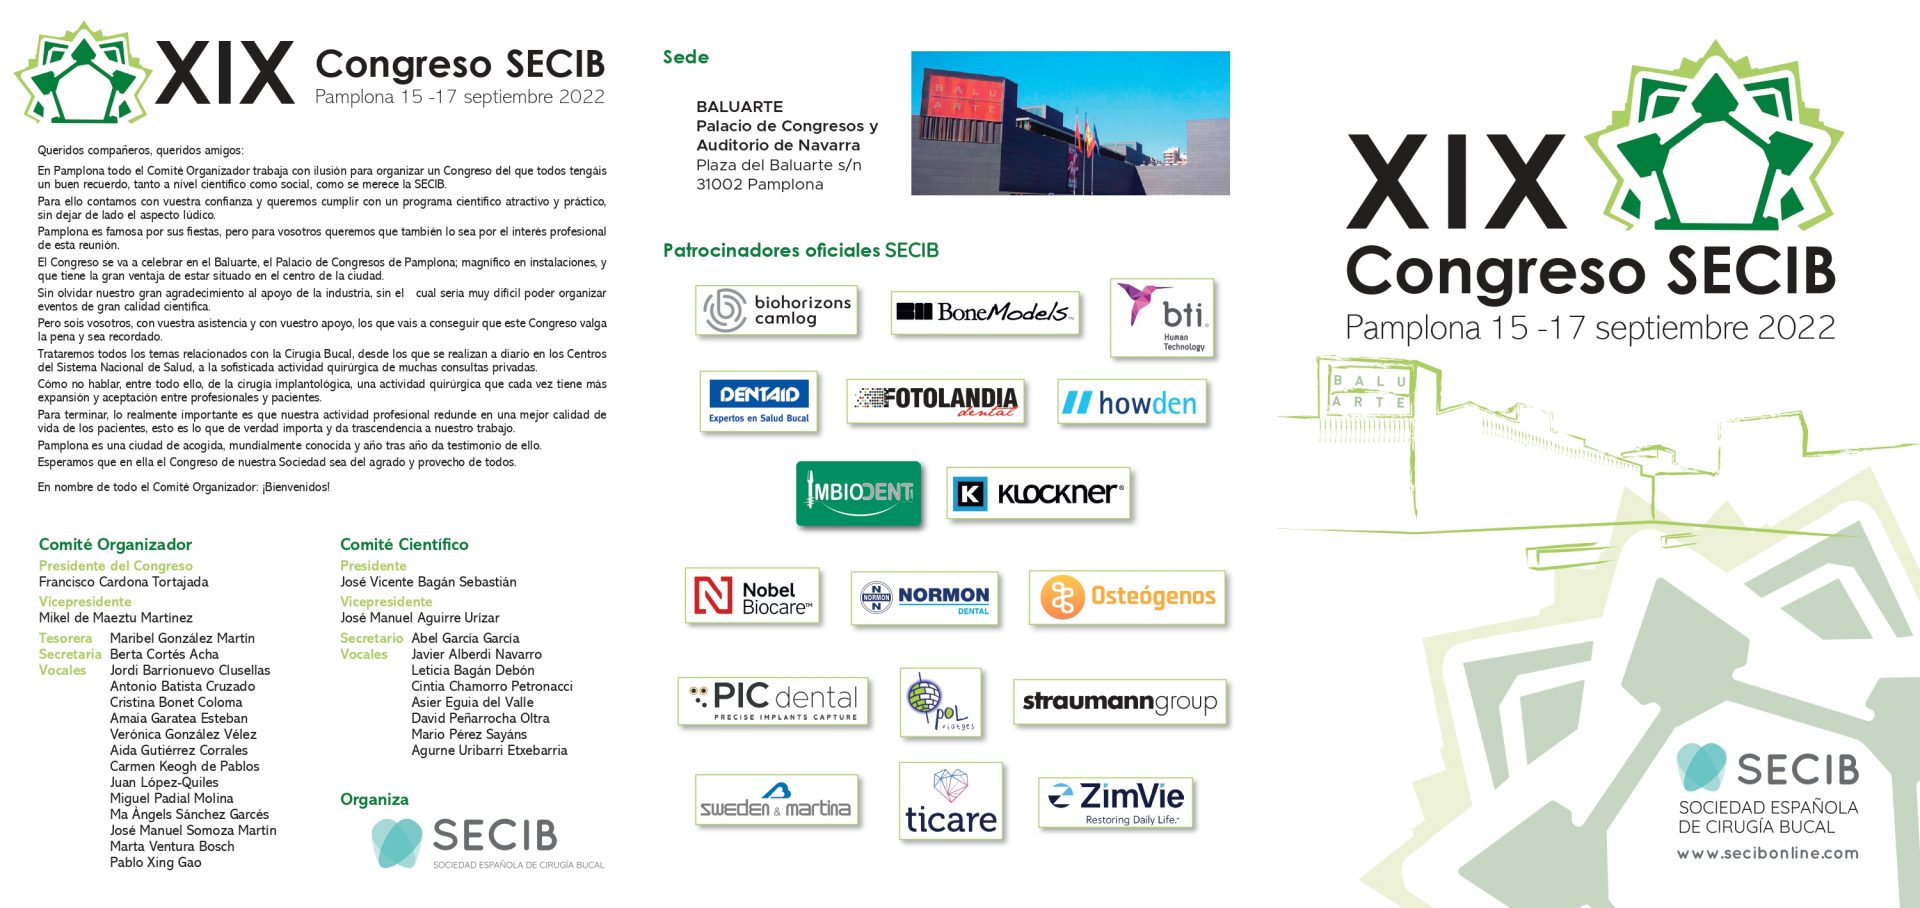 XIX Congreso SECIB – Pamplona 15-17 septiembre